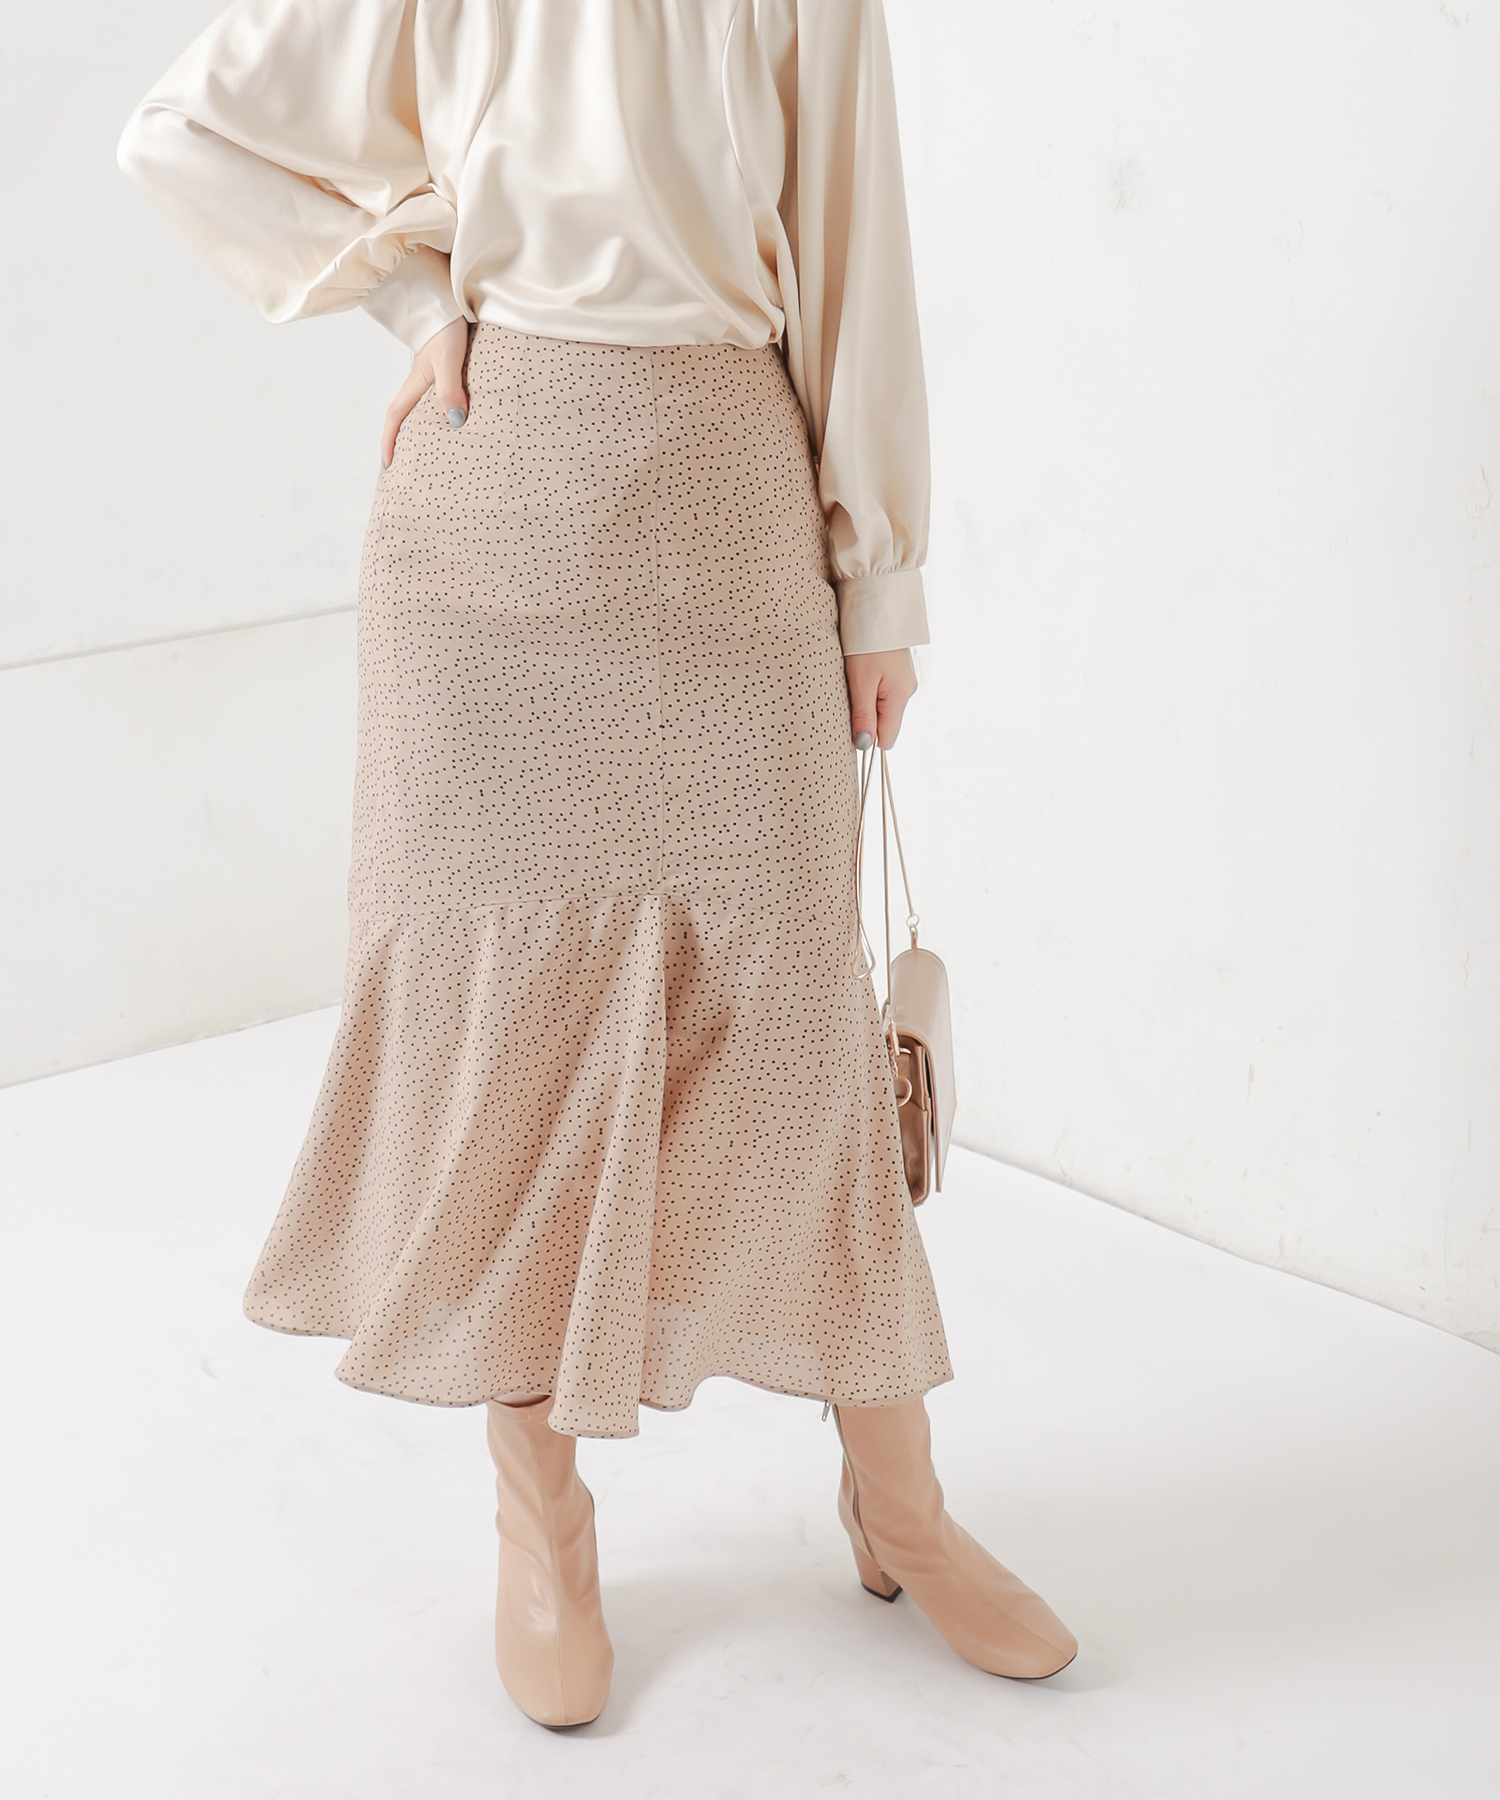 natural couture(ナチュラルクチュール) フロントステッチドットマーメイドスカート